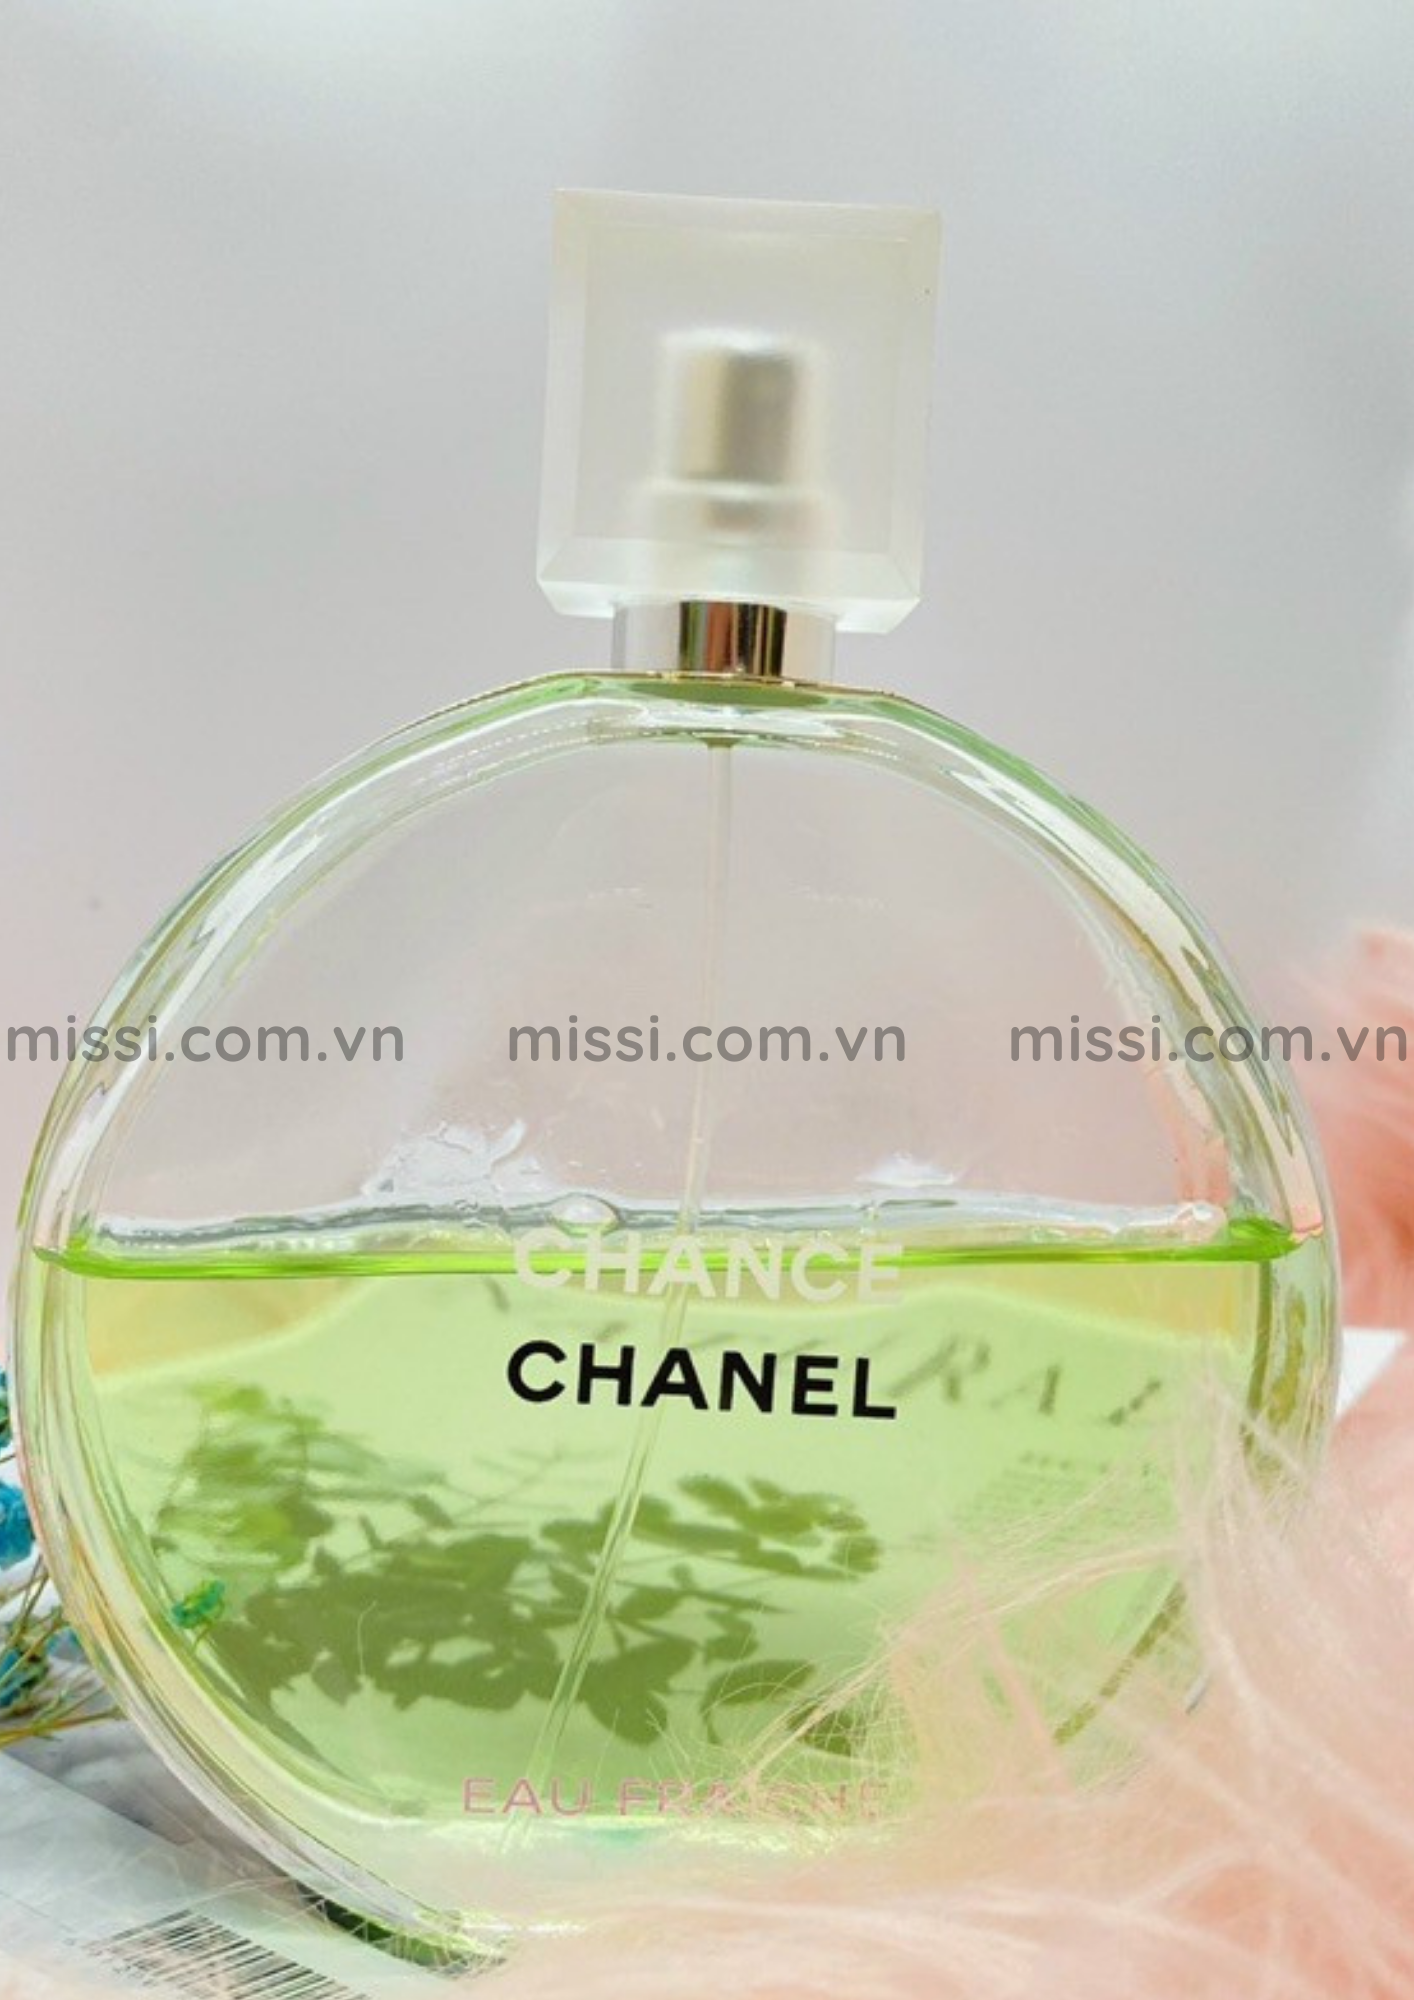 Review Chanel Chance Eau Fraiche-Cô nàng năng động quyến rũ - Missi Perfume